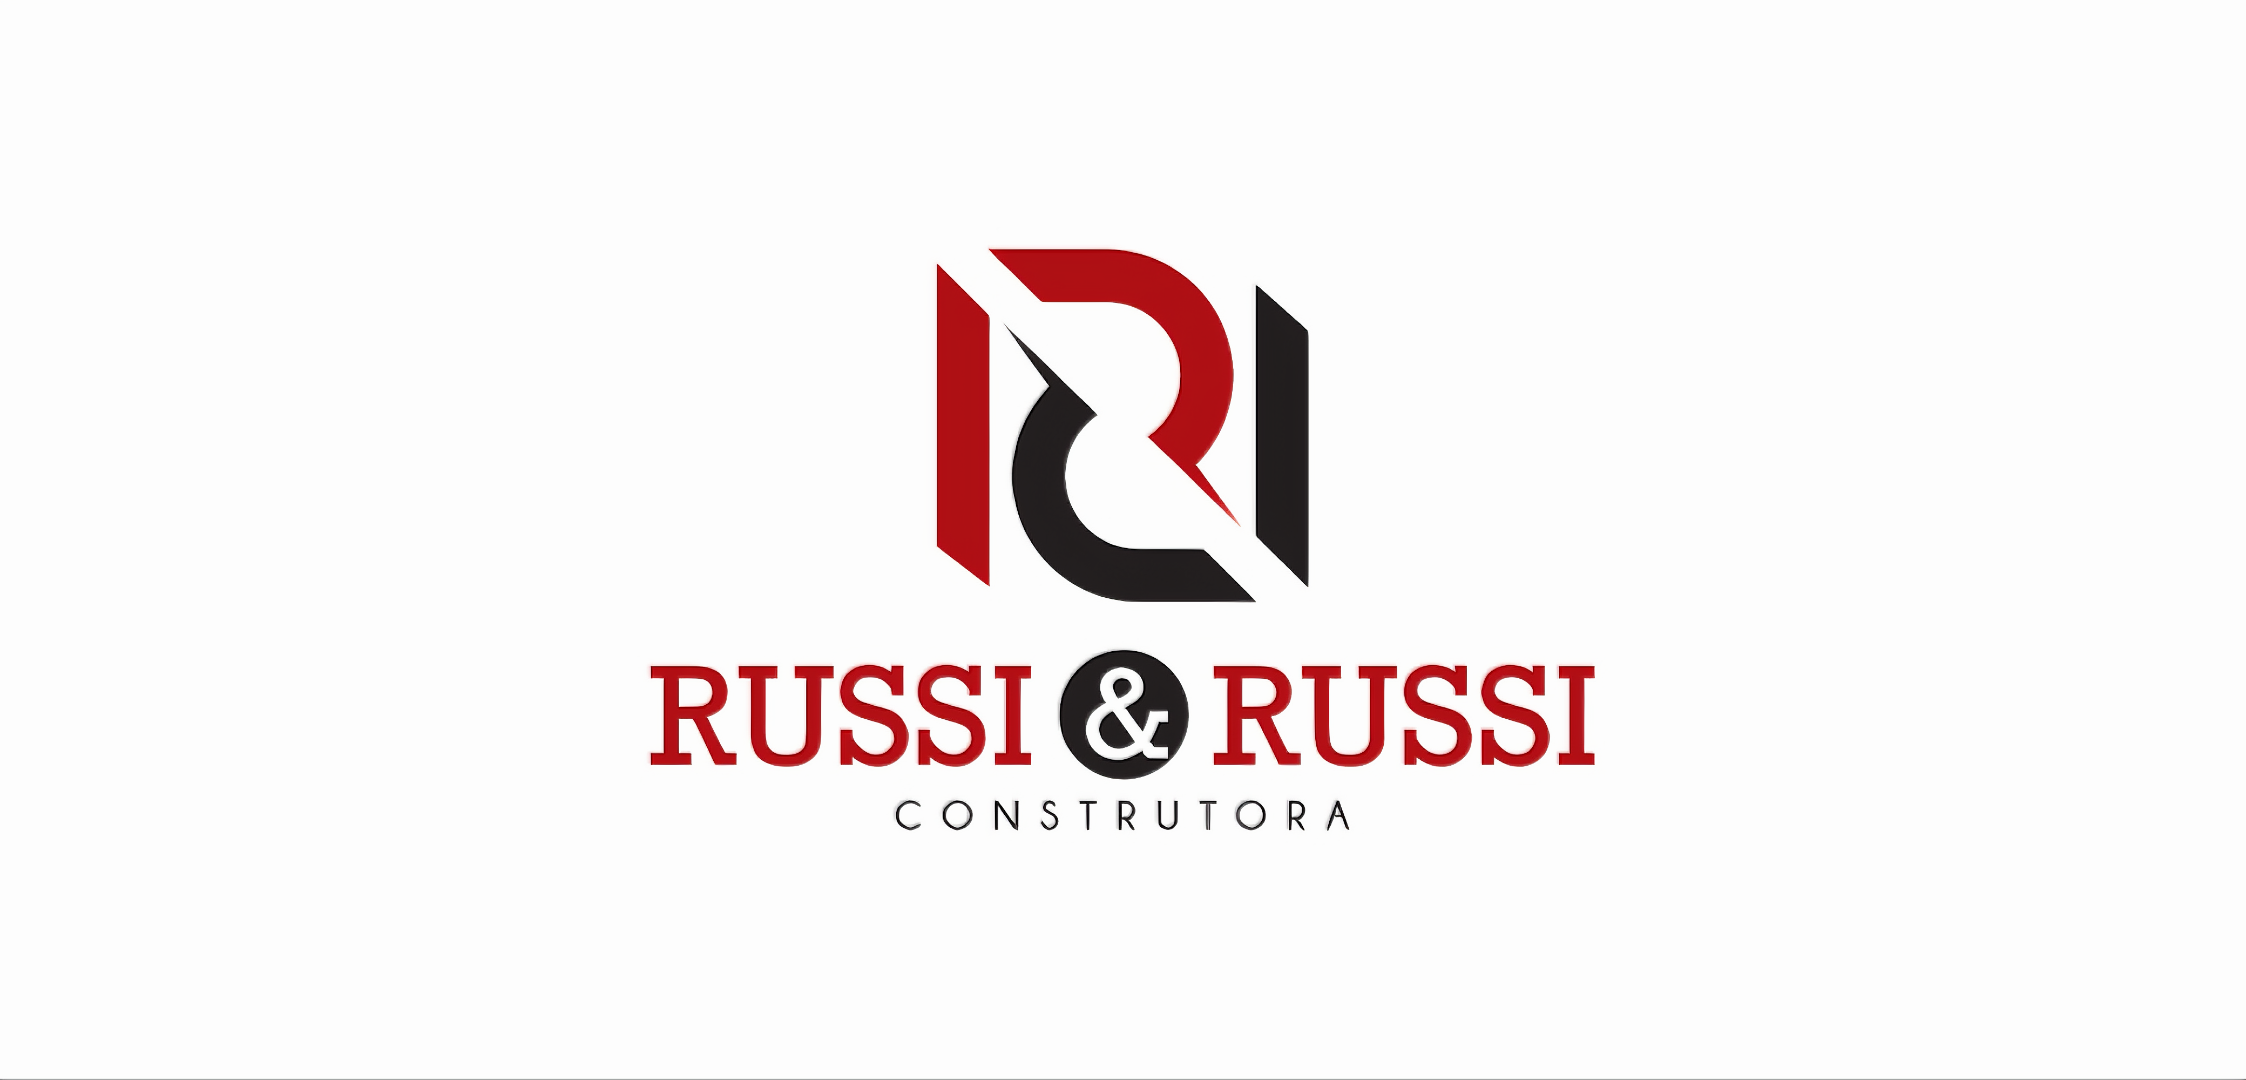 Logotipo da russi & russi construtora